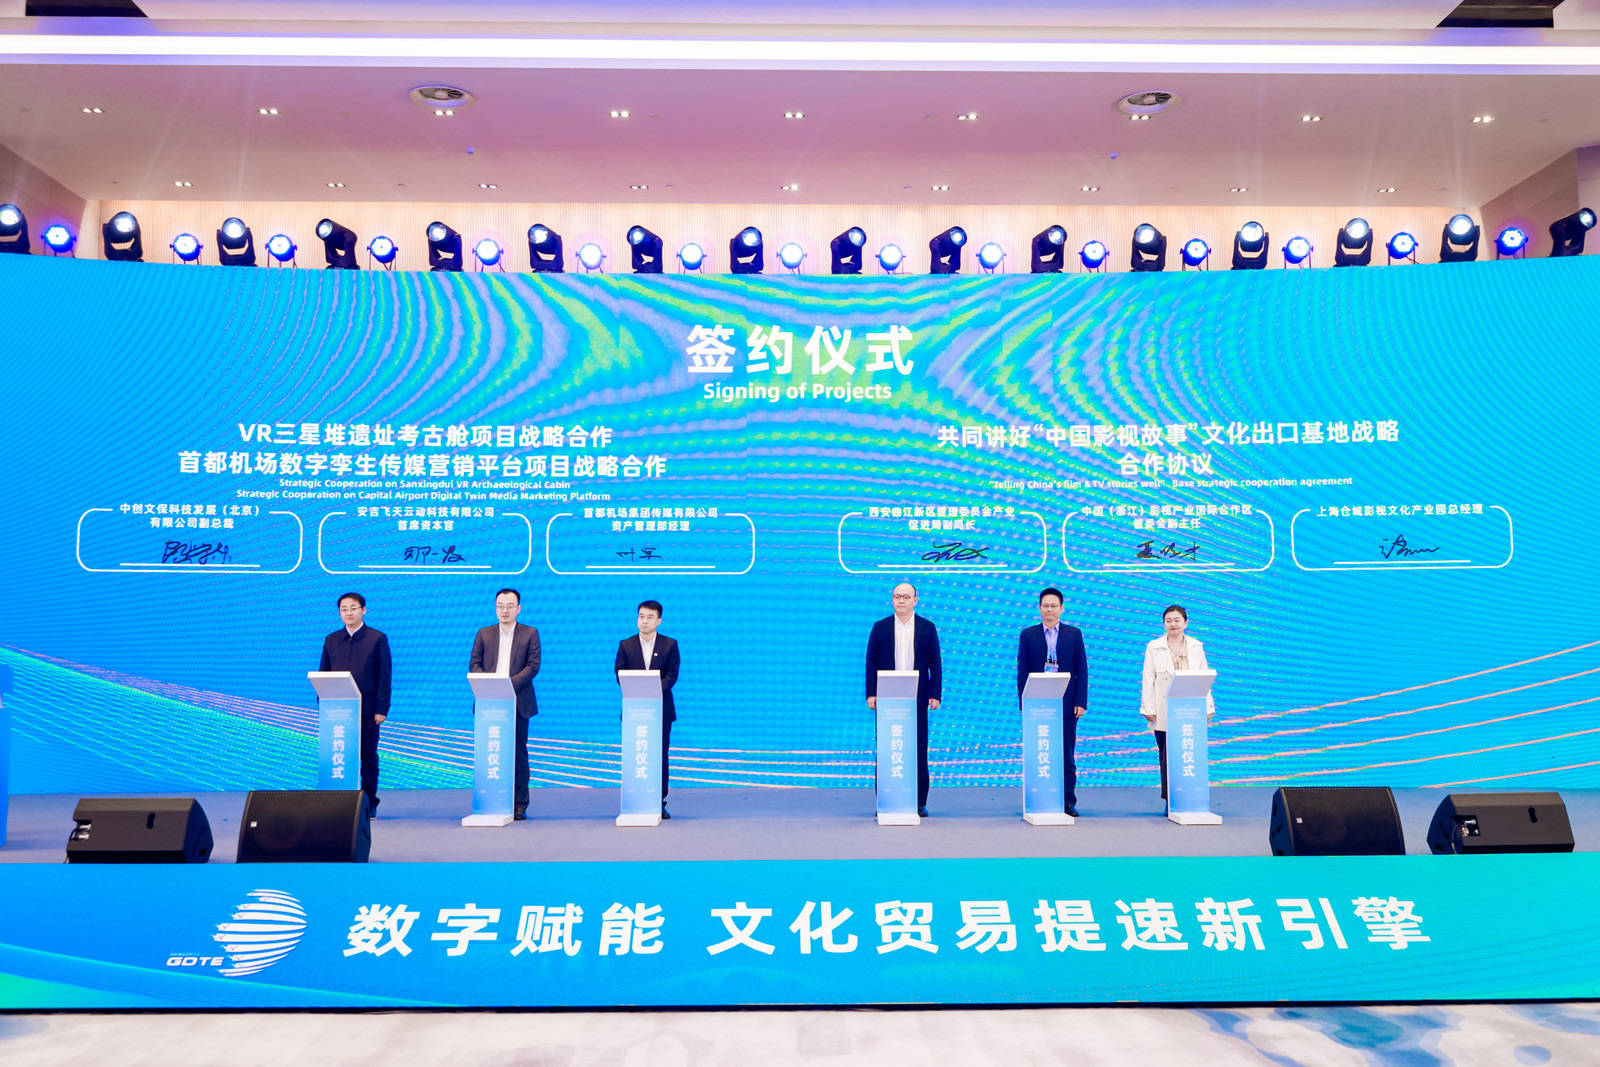 数字贸易博览会｜“数字赋能”让中国文化走向世界<strong></p>
<p>中国数字虚拟币</strong>，让世界认识中国重要途径